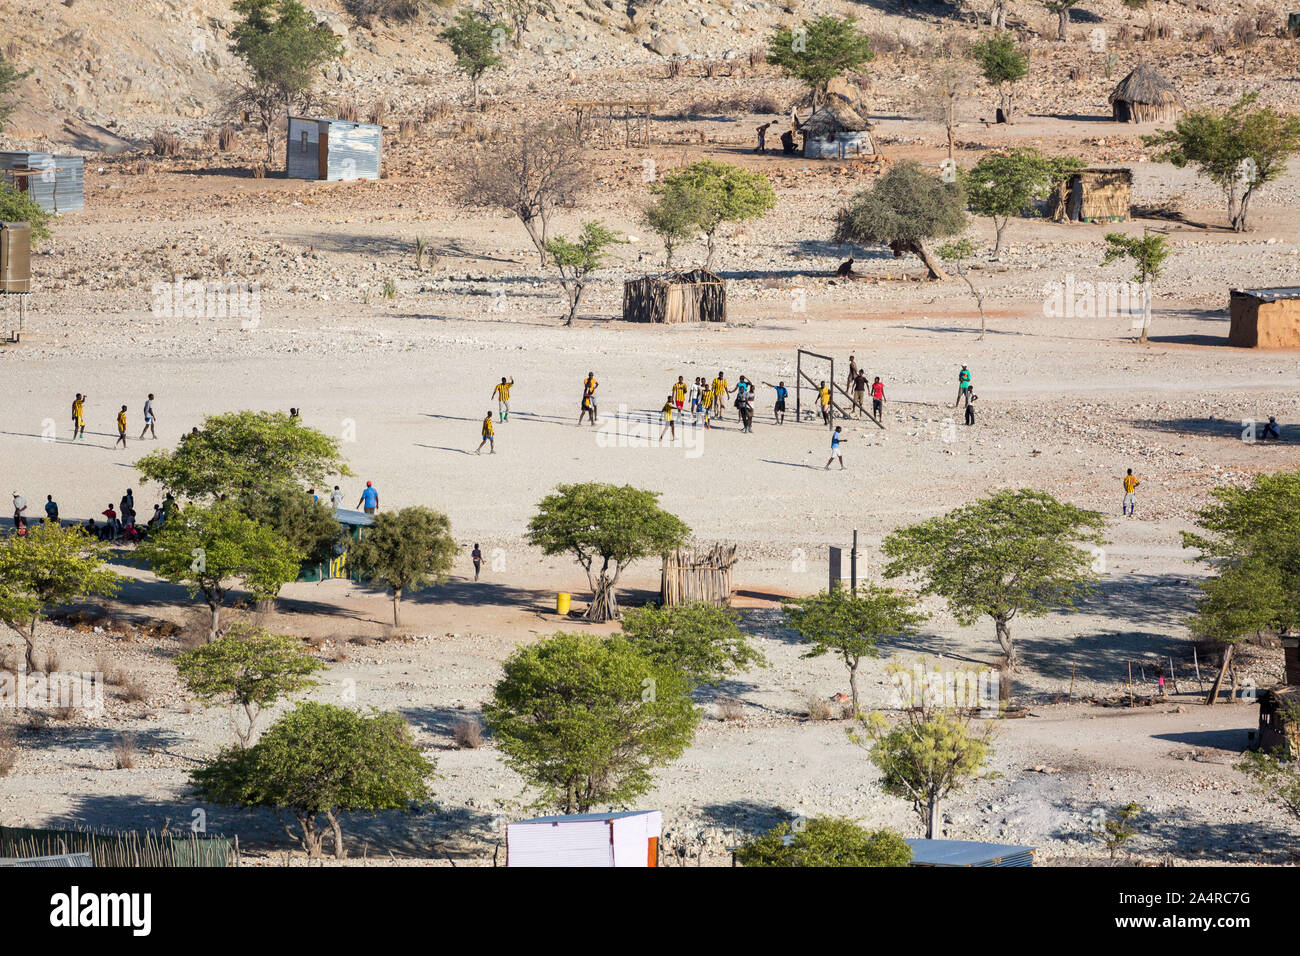 Luftaufnahme von einem Fußballspiel in einem armen und abgelegenen Dorf, Epupa, Namibia, Afrika Stockfoto